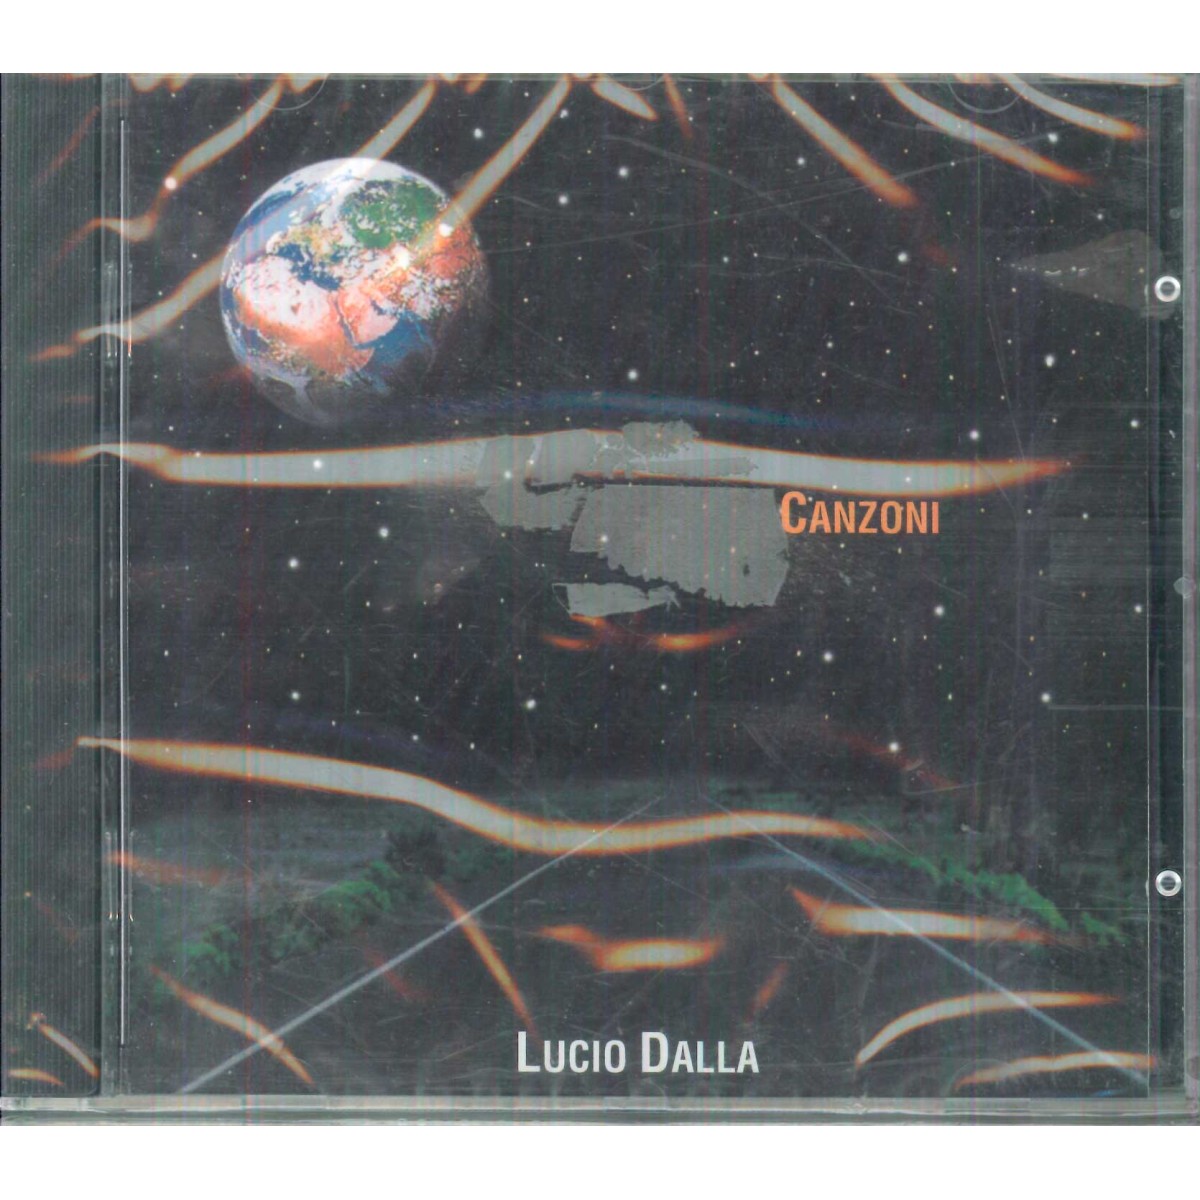 Lucio Dalla CD Canzoni / BMG Pressing ‎– 74321 40062 2